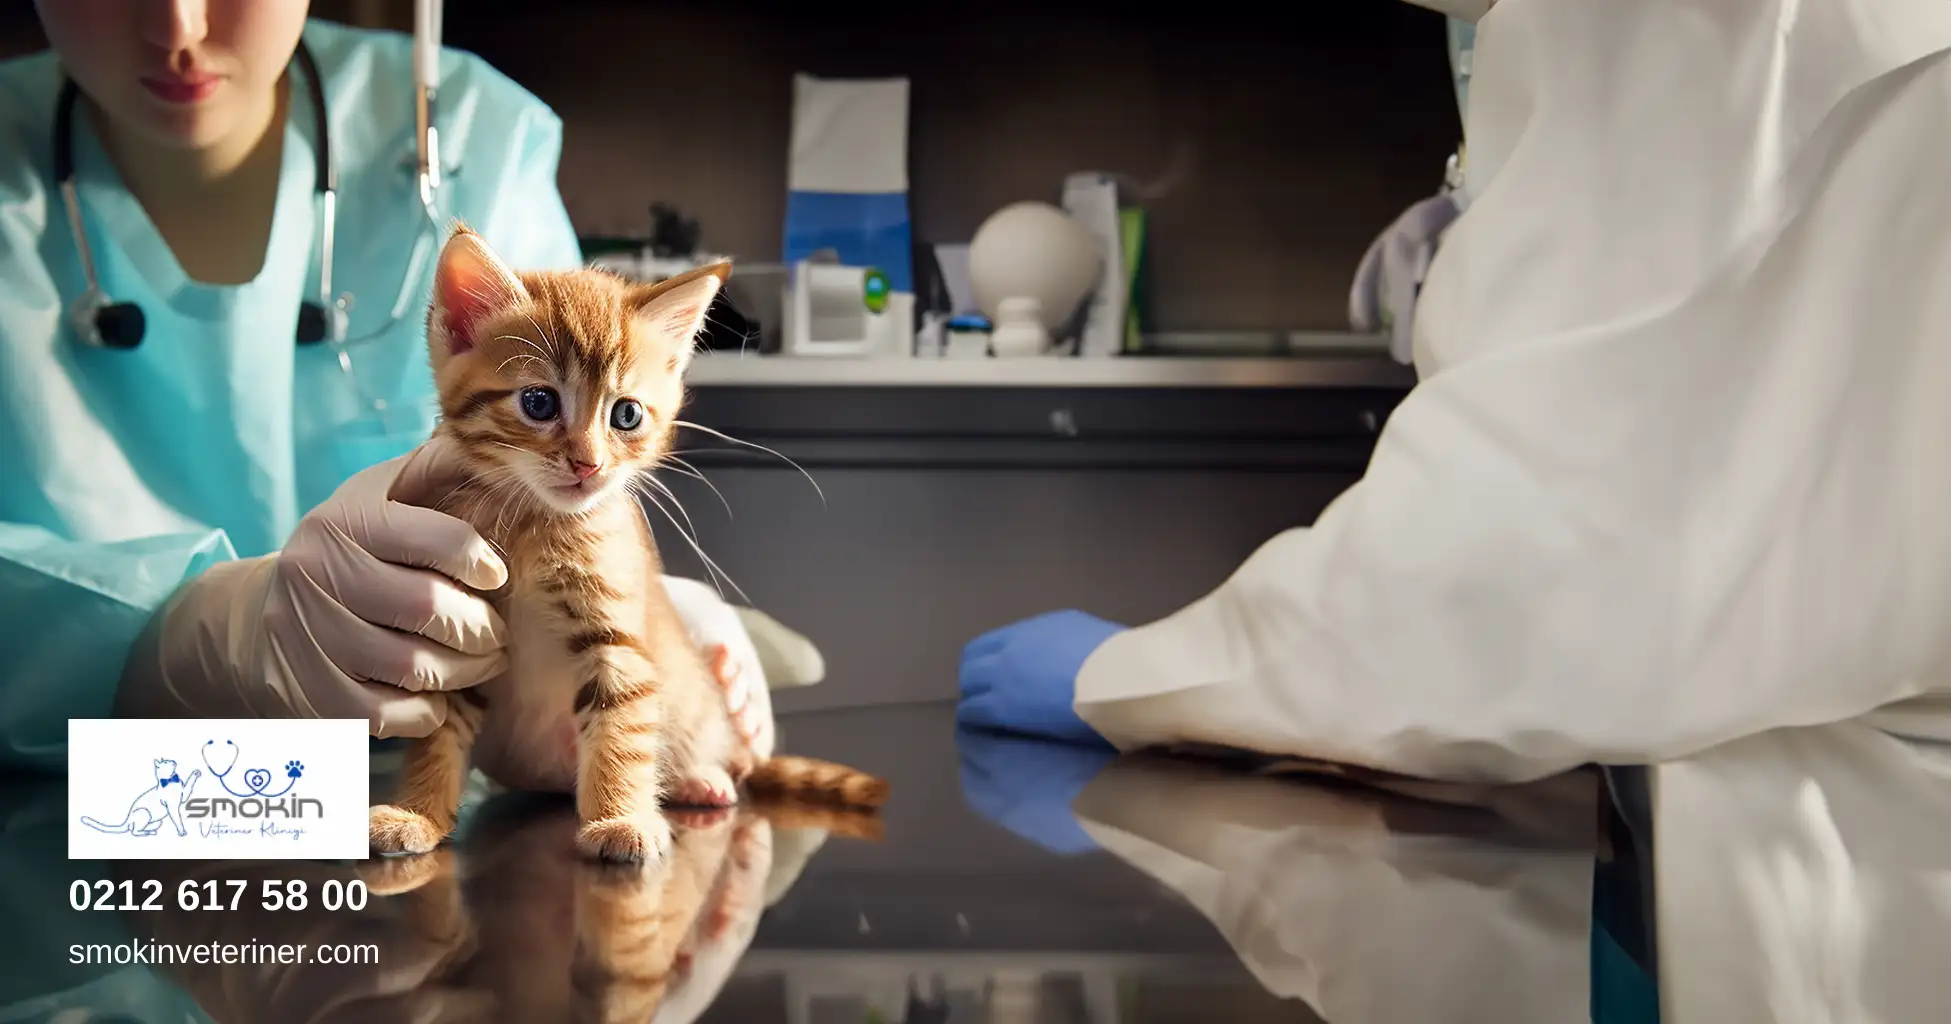 Veteriner Kliniğindeki masada hemşire tarafından eliyle tutulan bir yavru kedinin masum bakışının görseli.